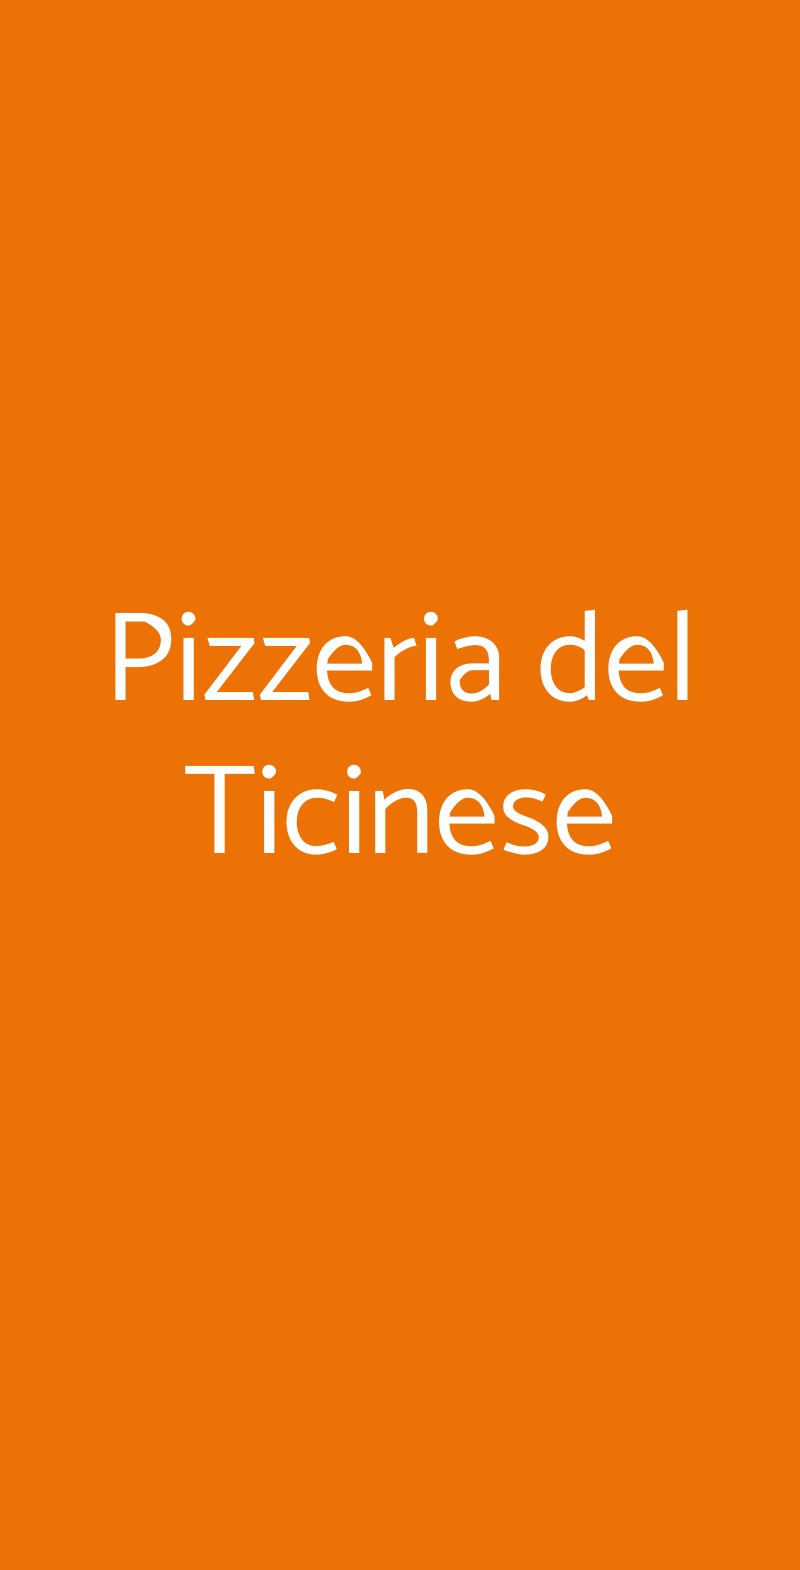 Pizzeria del Ticinese Milano menù 1 pagina